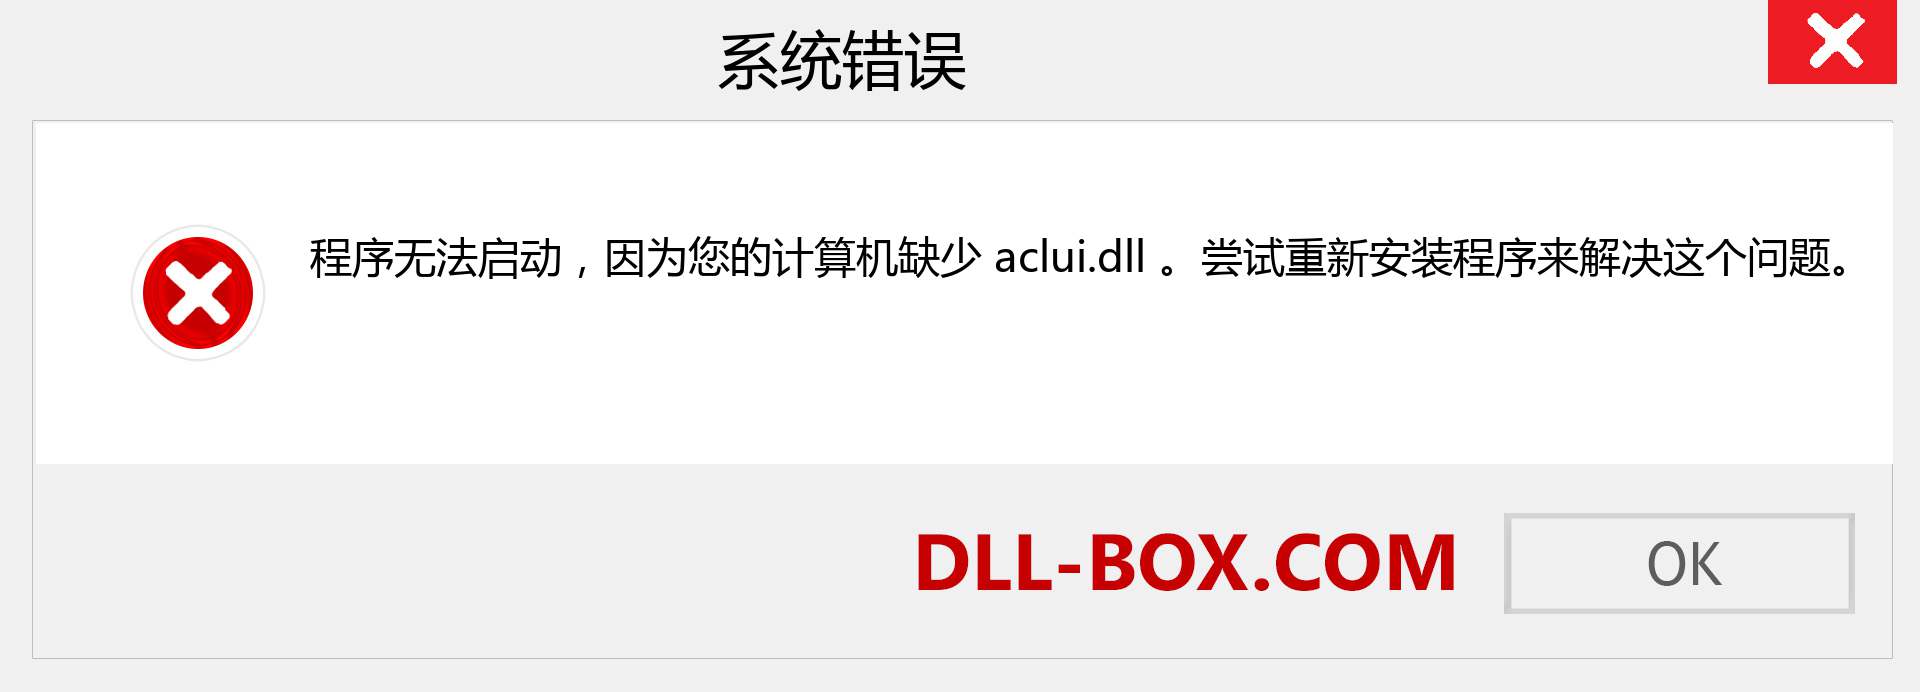 aclui.dll 文件丢失？。 适用于 Windows 7、8、10 的下载 - 修复 Windows、照片、图像上的 aclui dll 丢失错误